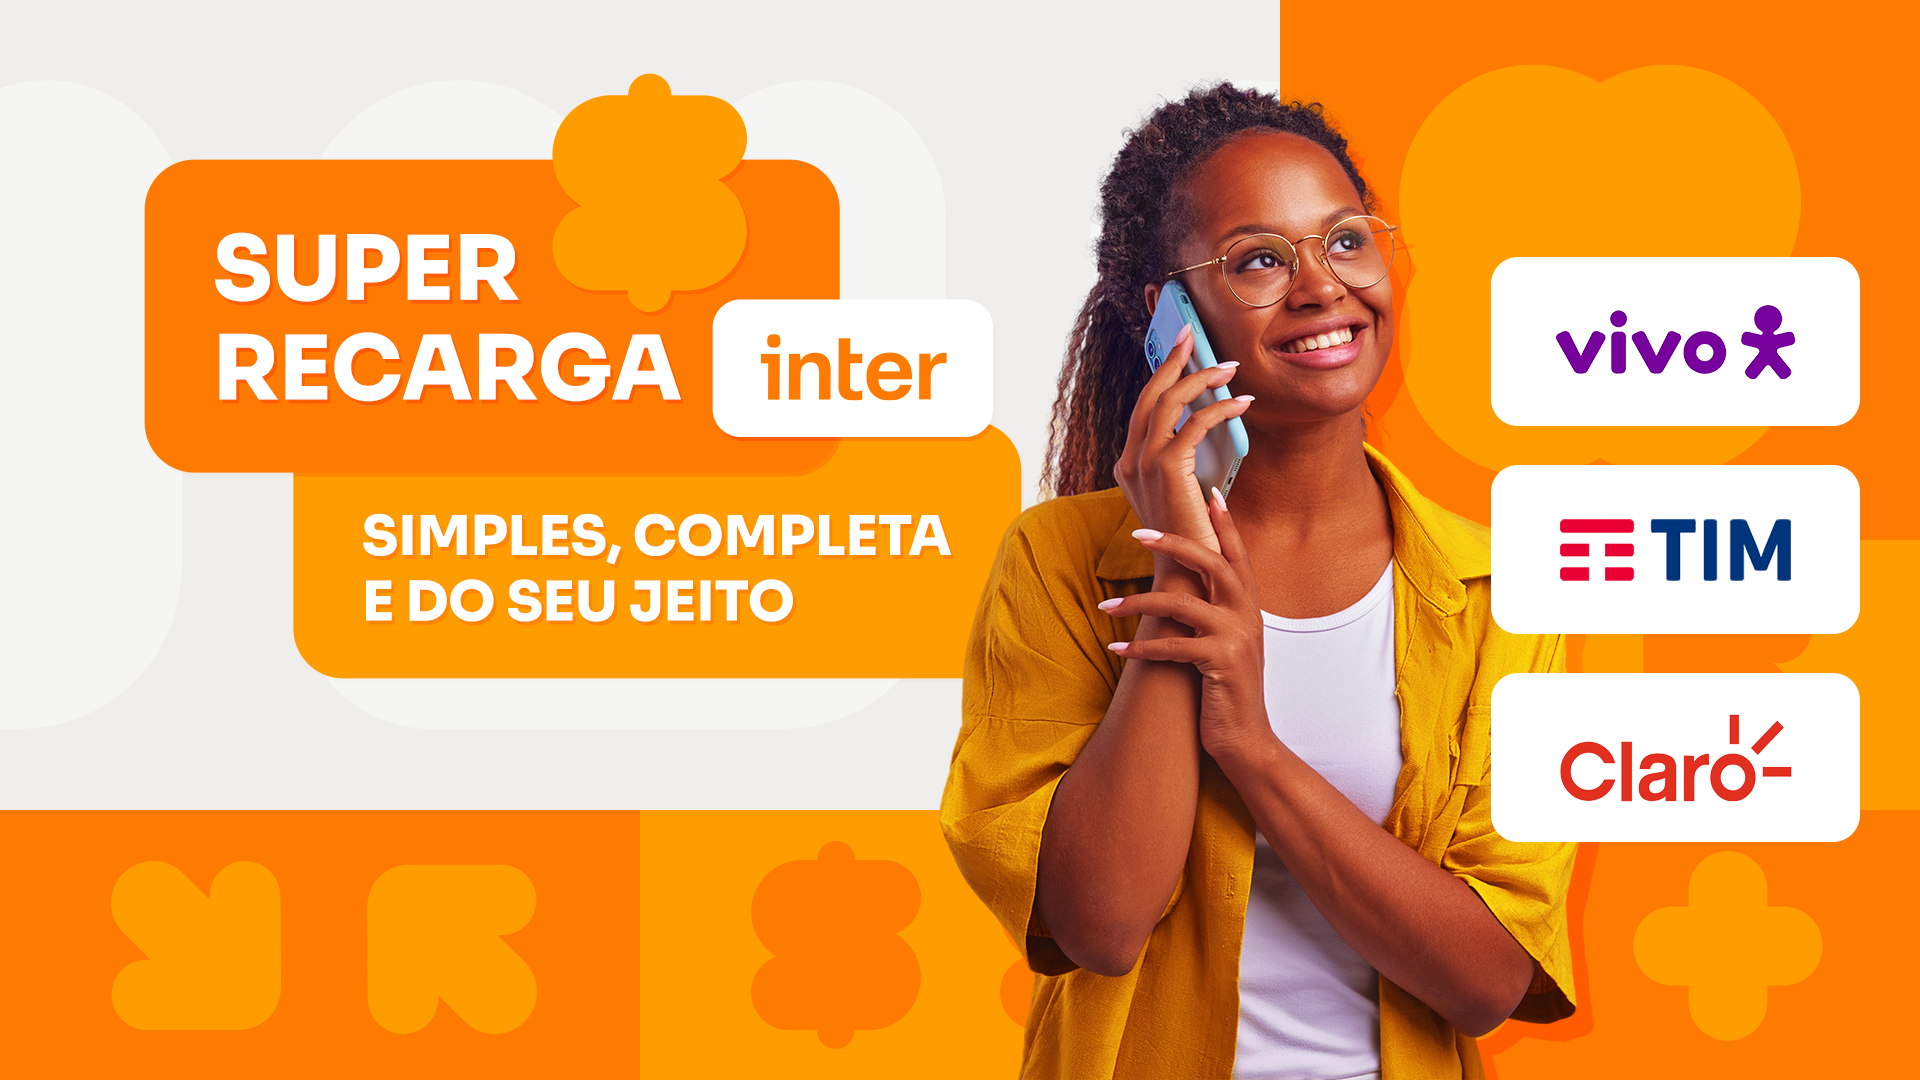 Super Recarga Inter: Simples, completa e do su jeito. Recarregue seu celular com vantagens nas principais operadoras do país, como vivo, TIM e Claro.